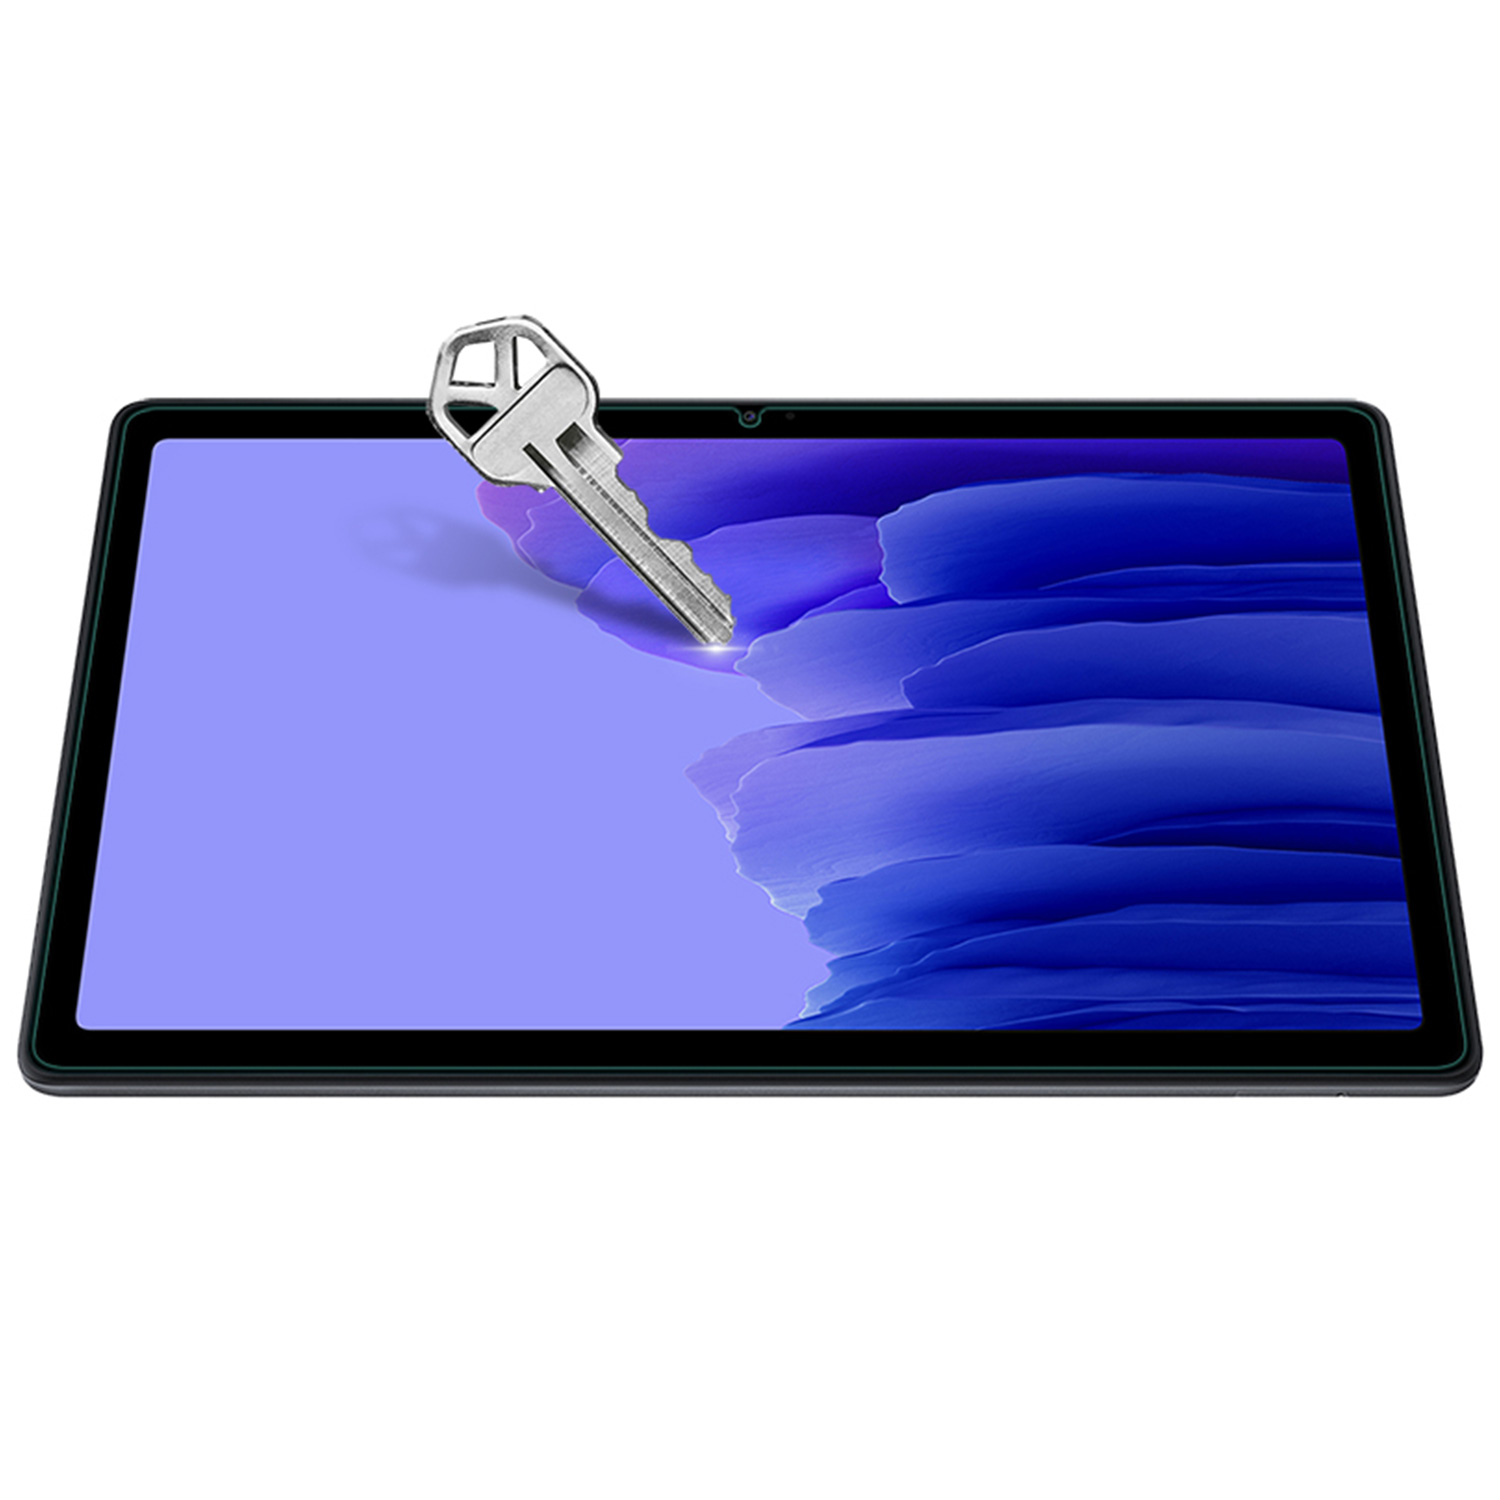 Szkło hartowane Nillkin Amazing H+ dla Samsung Galaxy Tab A7 - Specyfikacja: [PG]Szkło hartowane NILLKIN H+ do Samsung Galaxy Tab A7